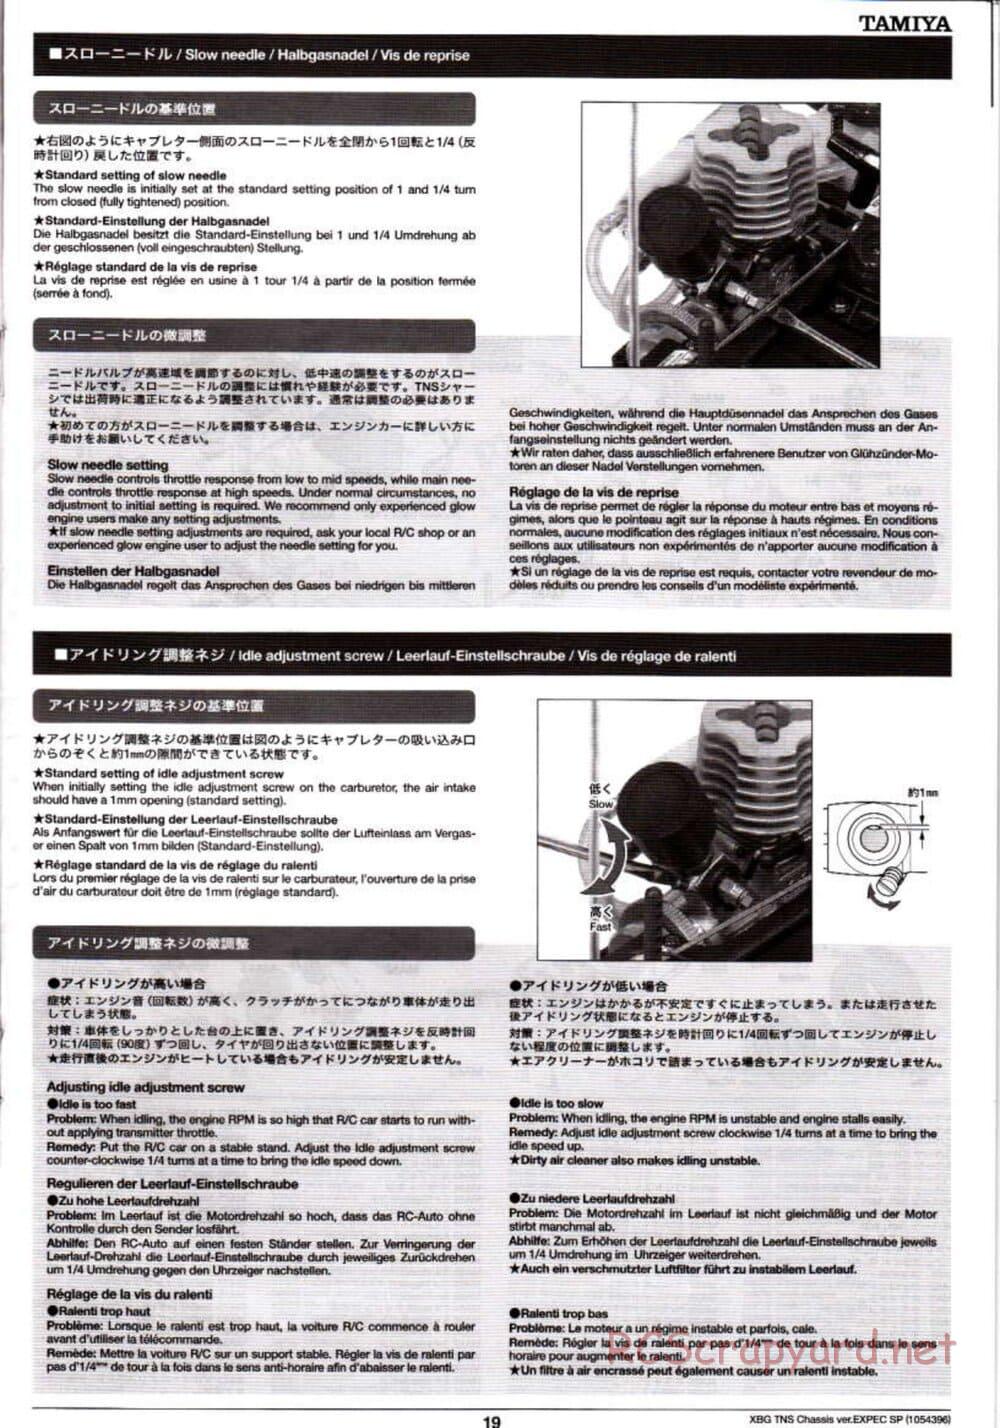 Tamiya - TNS Chassis - Manual - Page 19